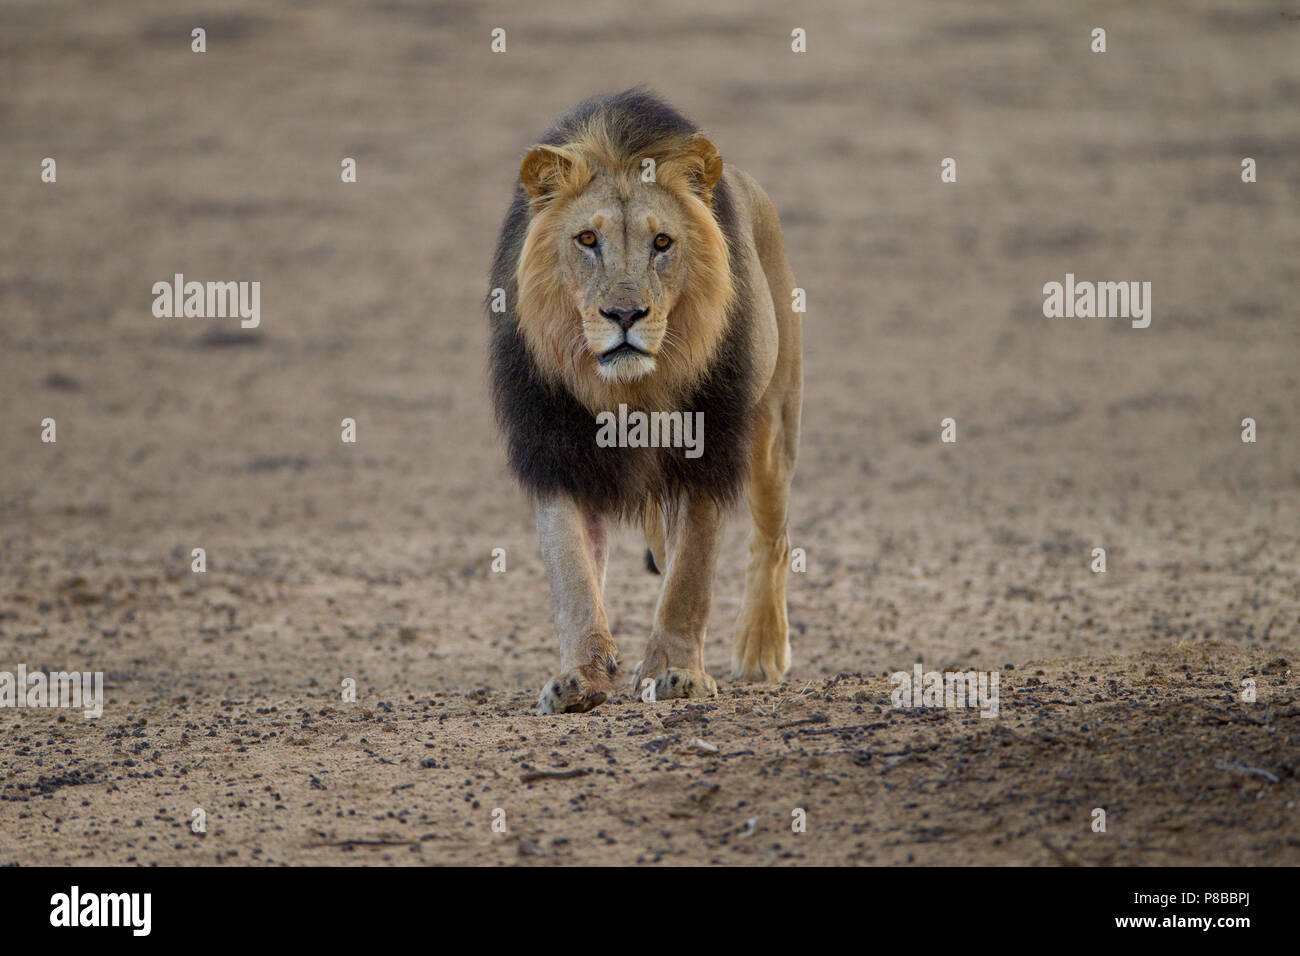 La crinière noire Kalahari desert lion portrait Banque D'Images